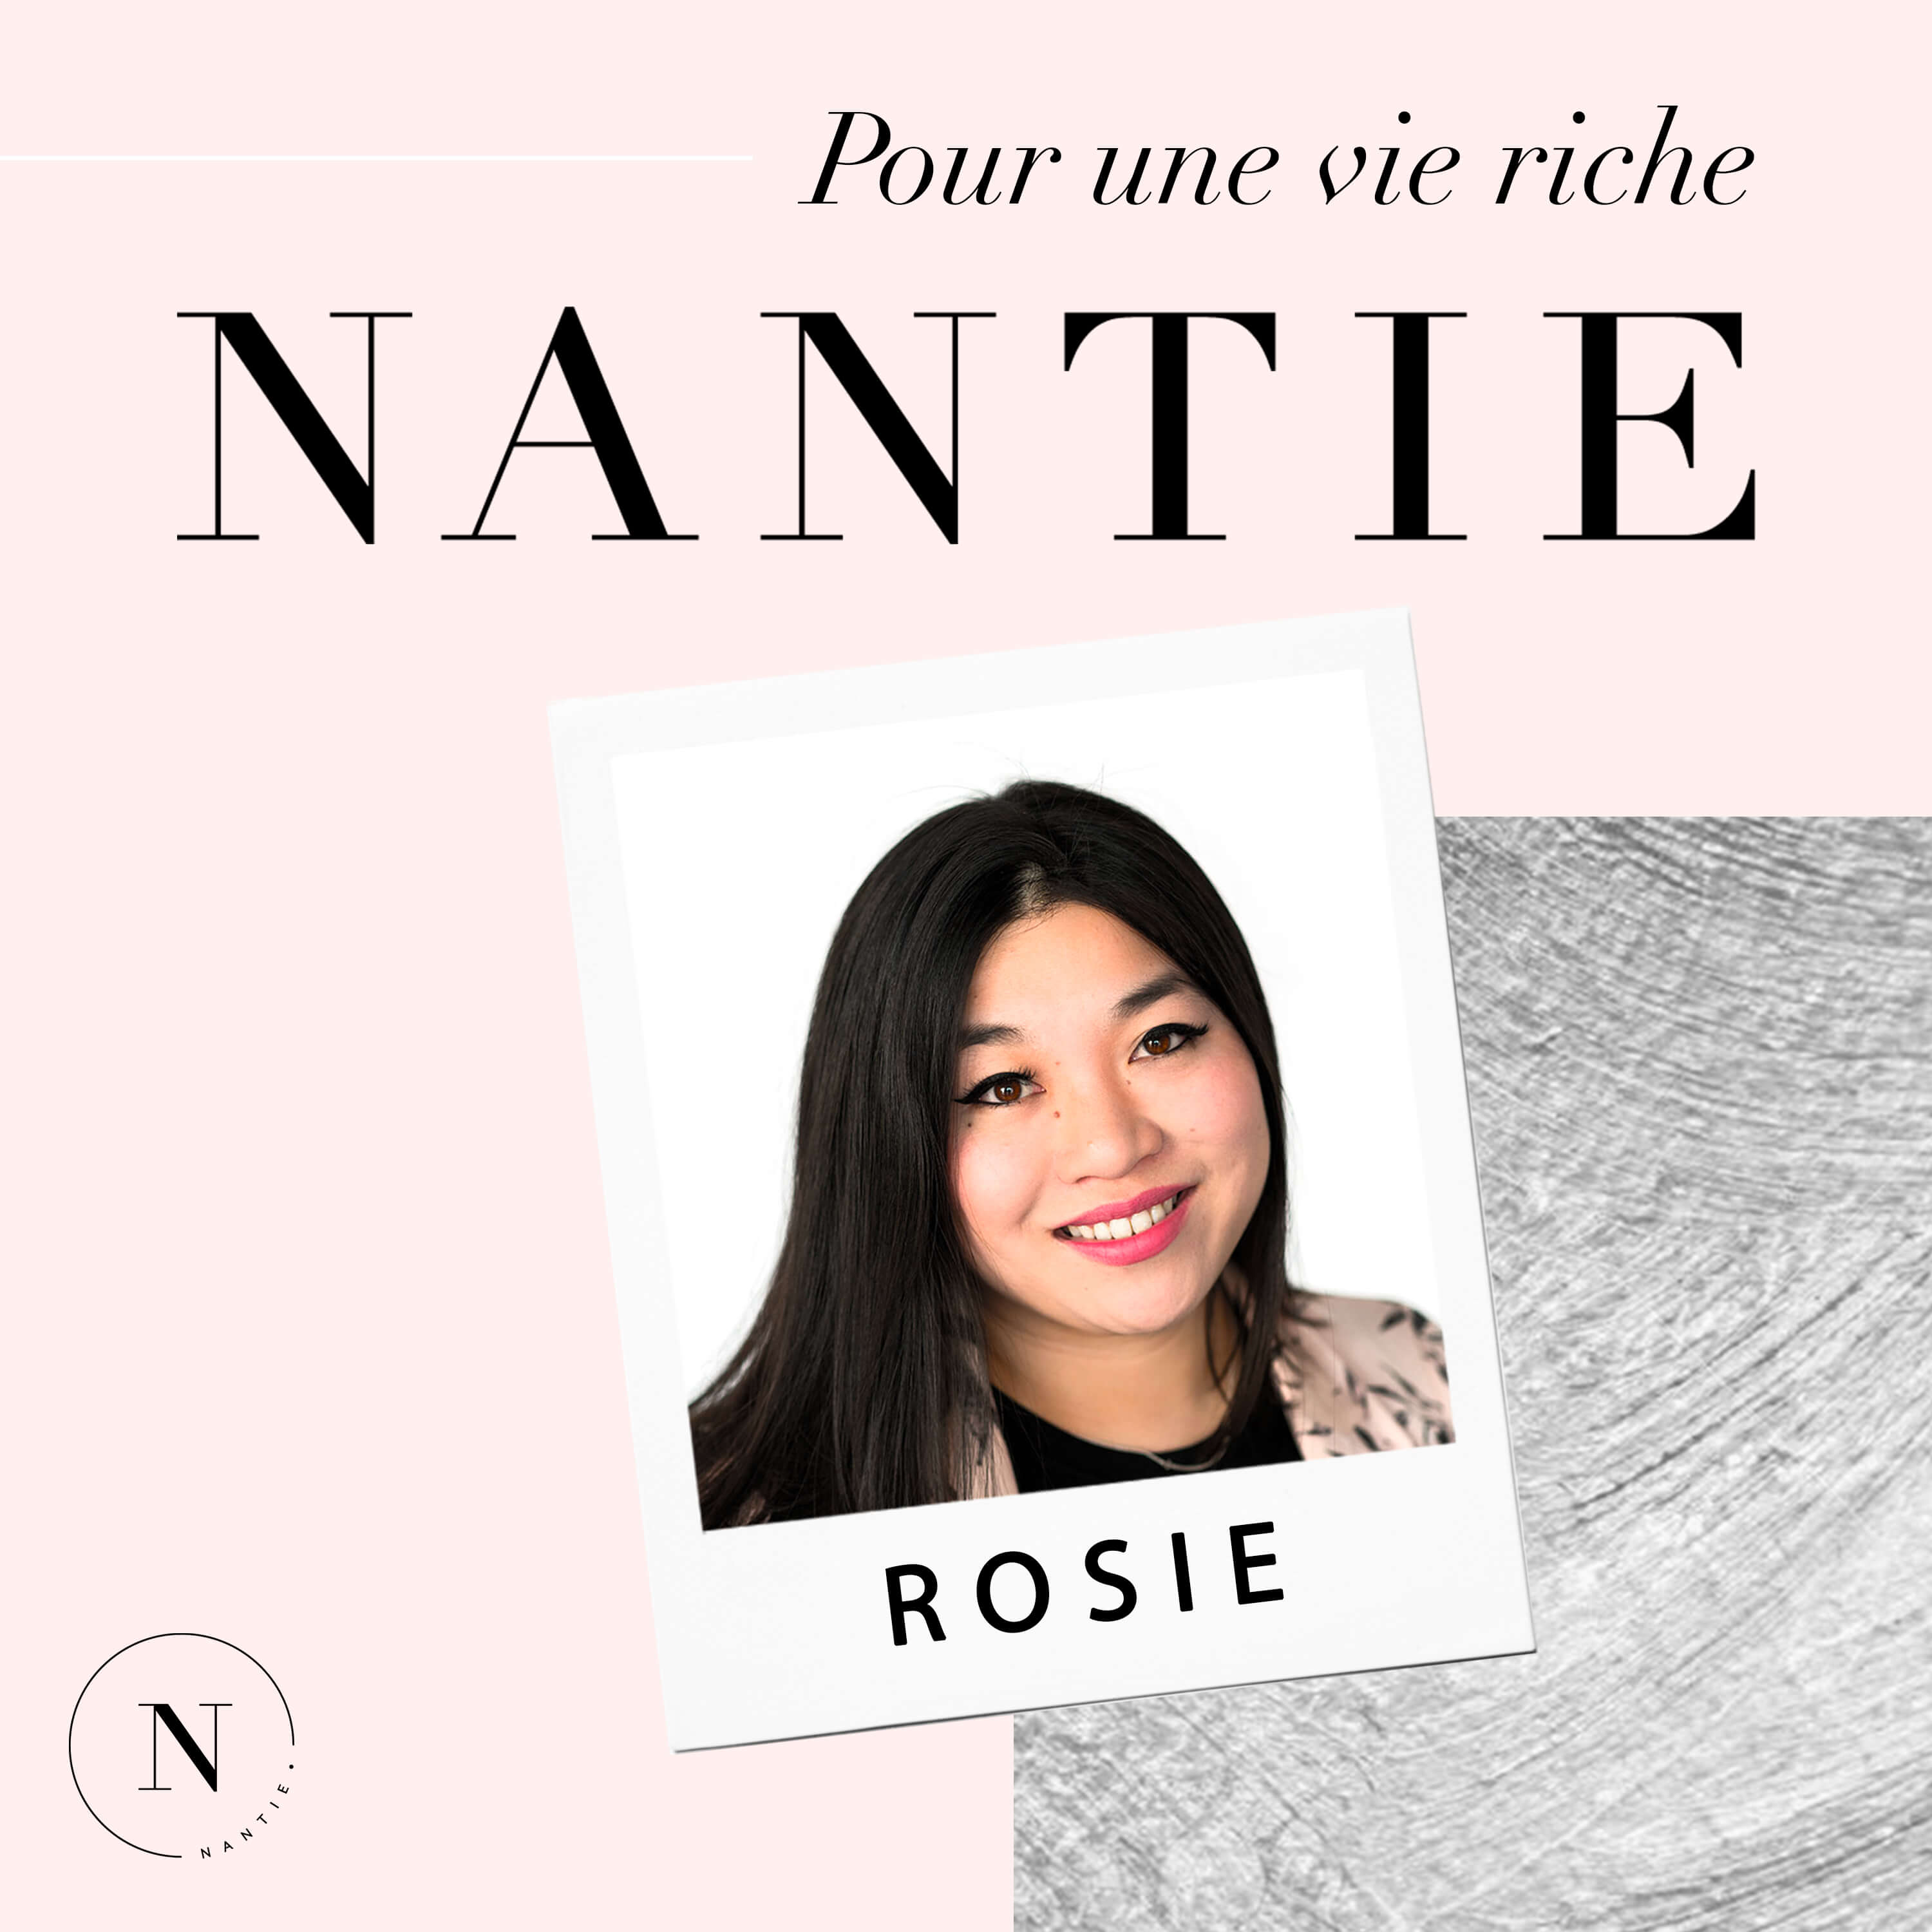 Nantie